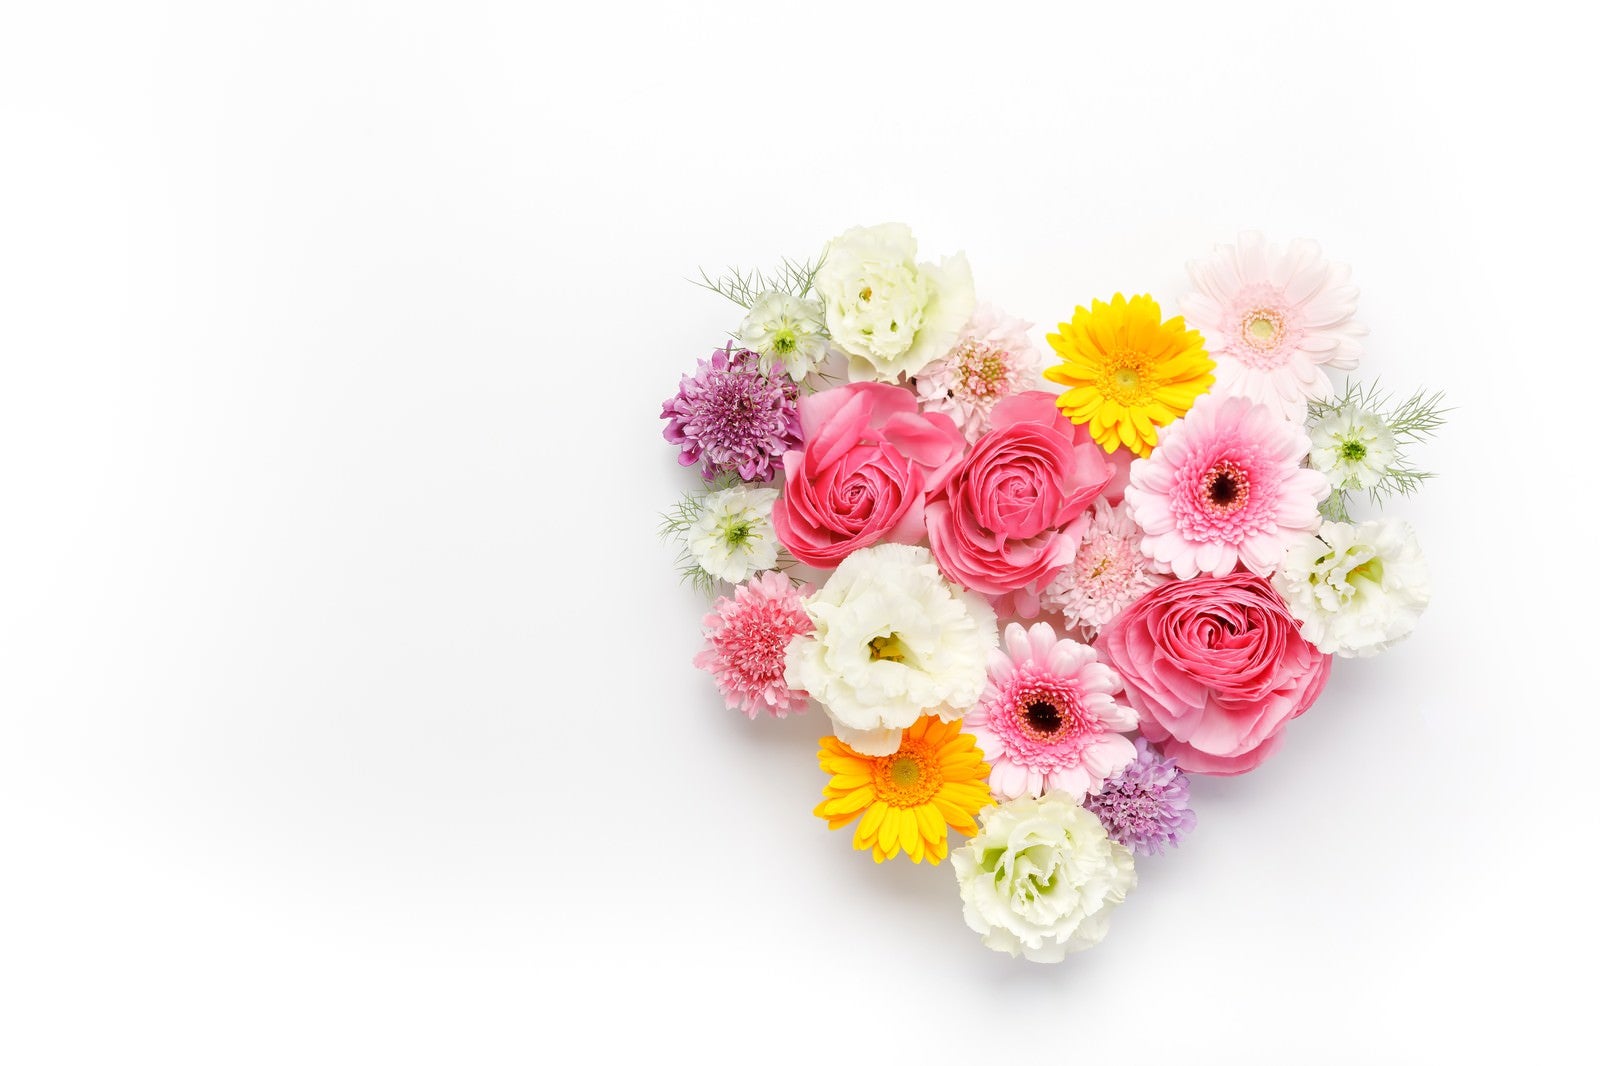 「ハート型の花で愛情表現」の写真